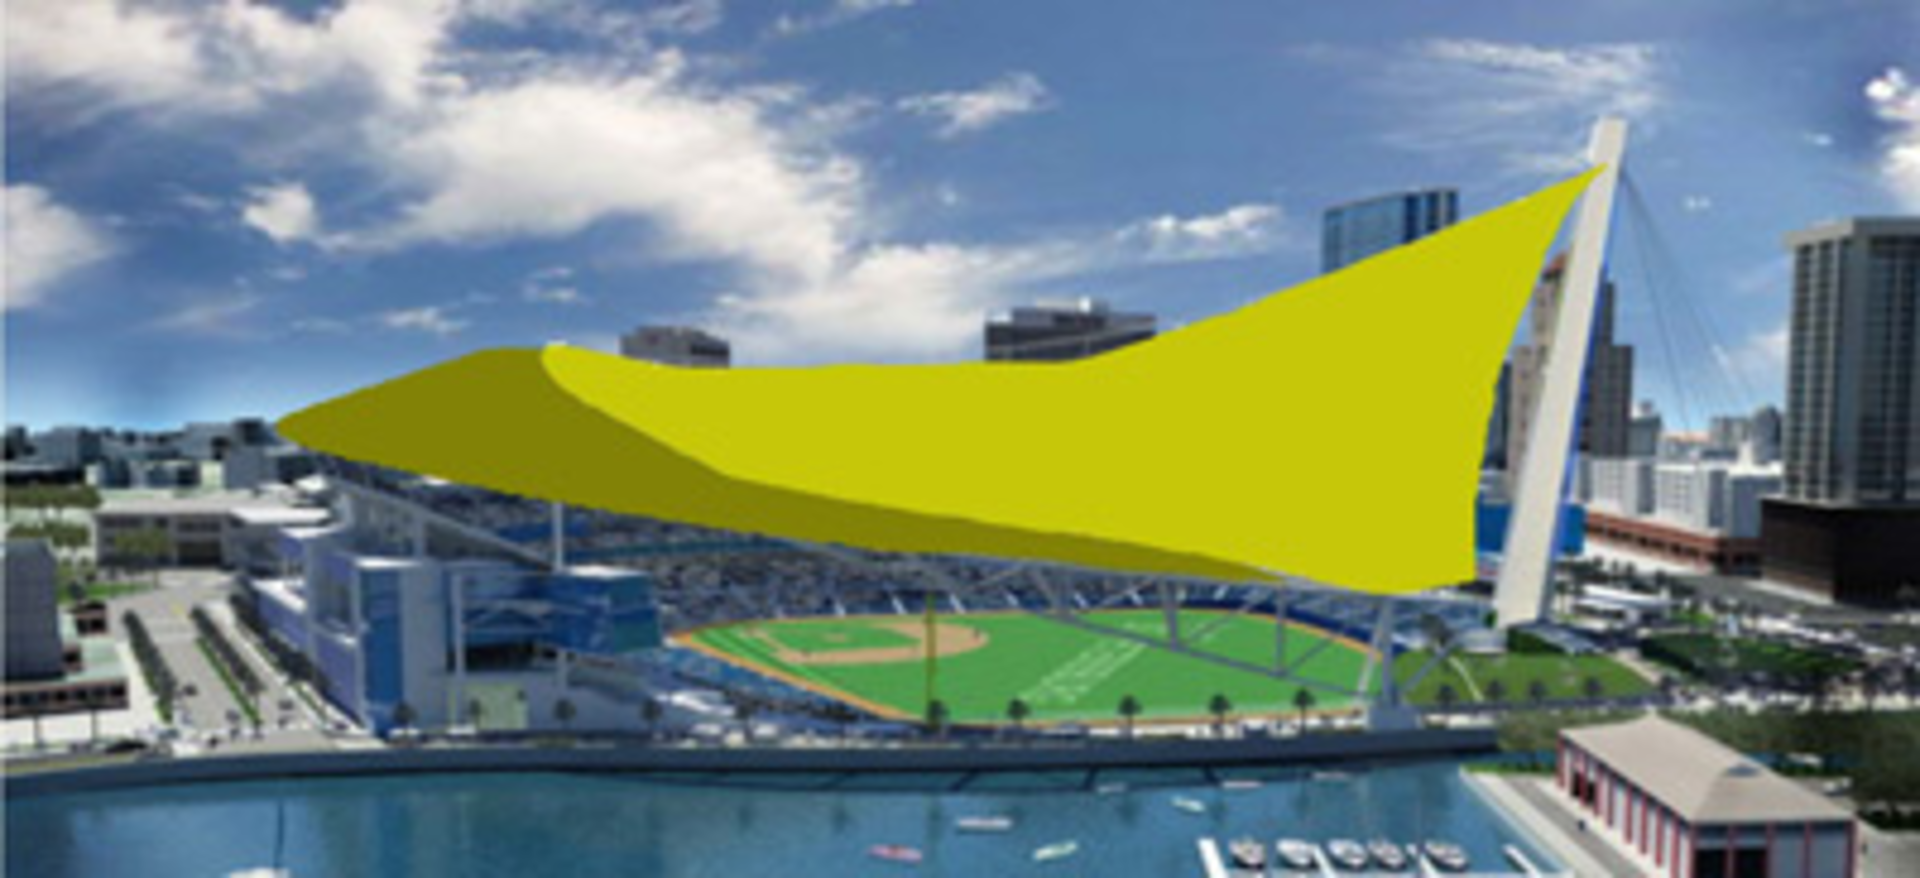 Rays release new St. Petersburg stadium renderings in partnership